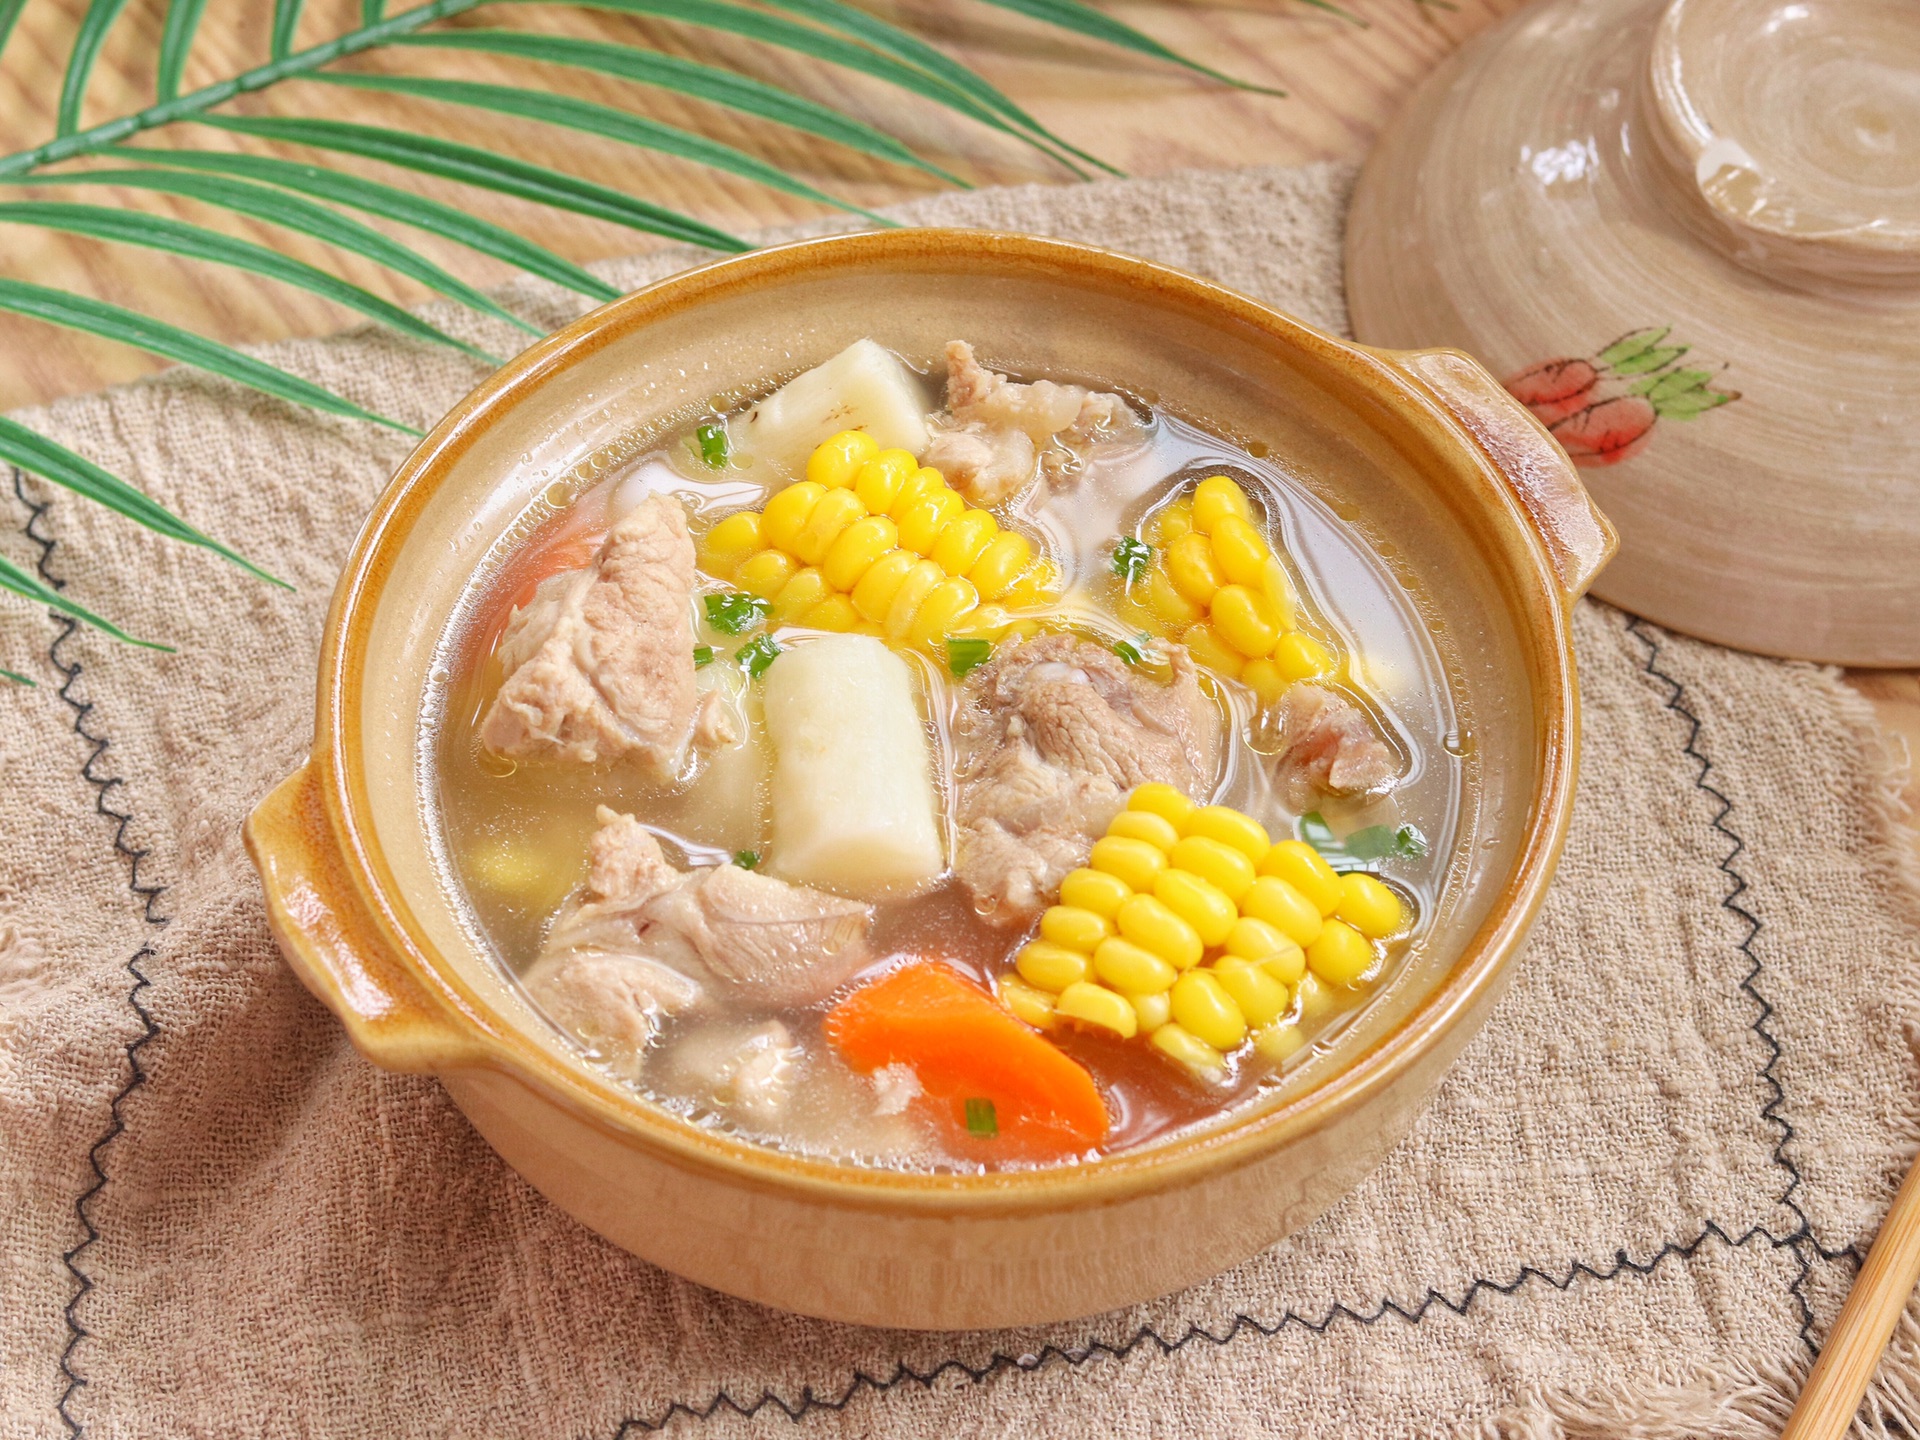 山药玉米猪骨汤做法,食材简单,汤鲜浓郁一点也不油腻